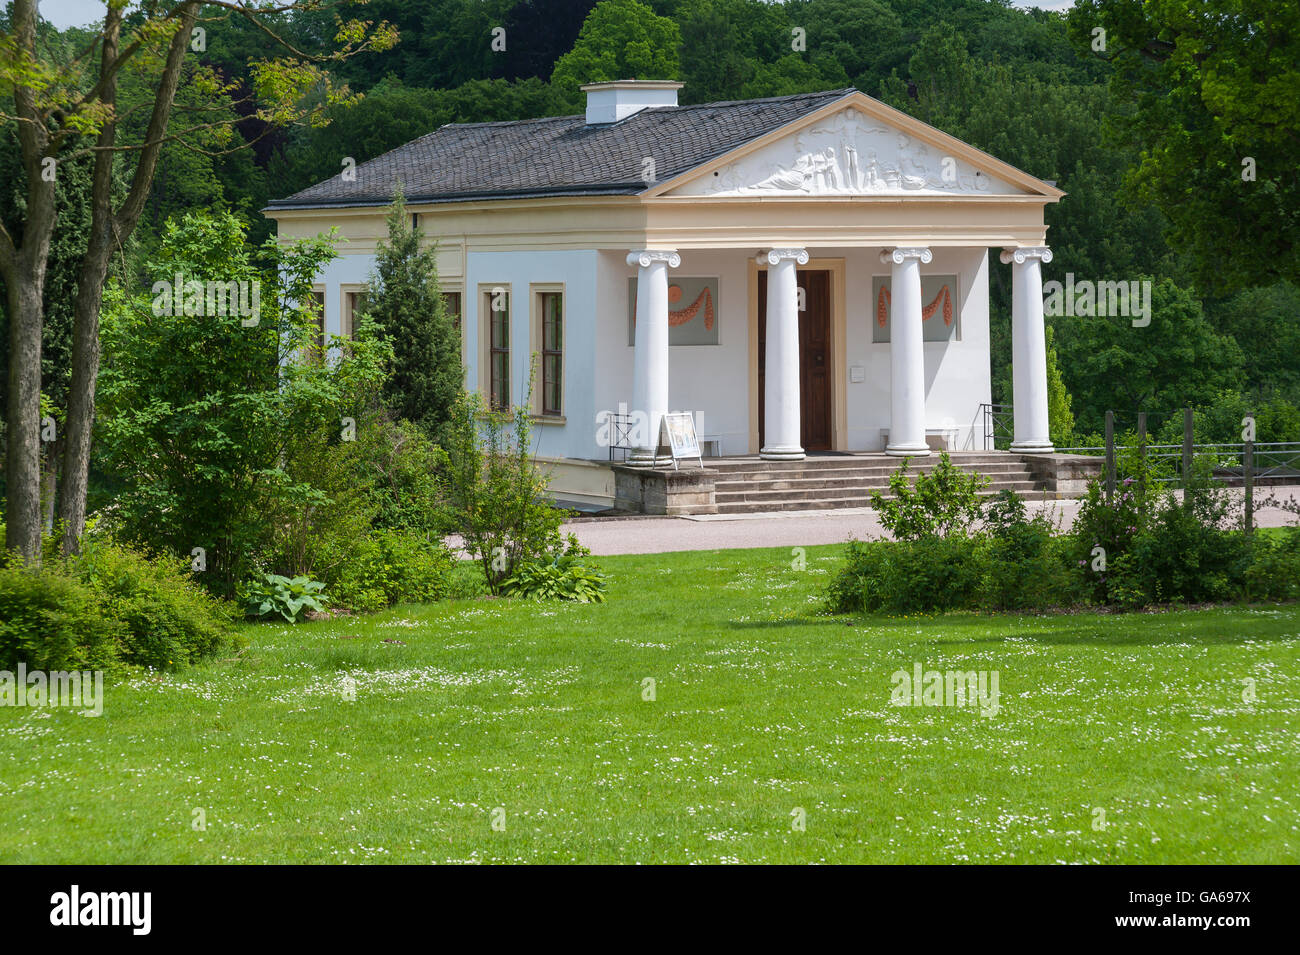 Villa Romana, Parque an der Ilm, también llamado Parque del ILM, Ilmpark, Weimar, Turingia, Alemania Foto de stock